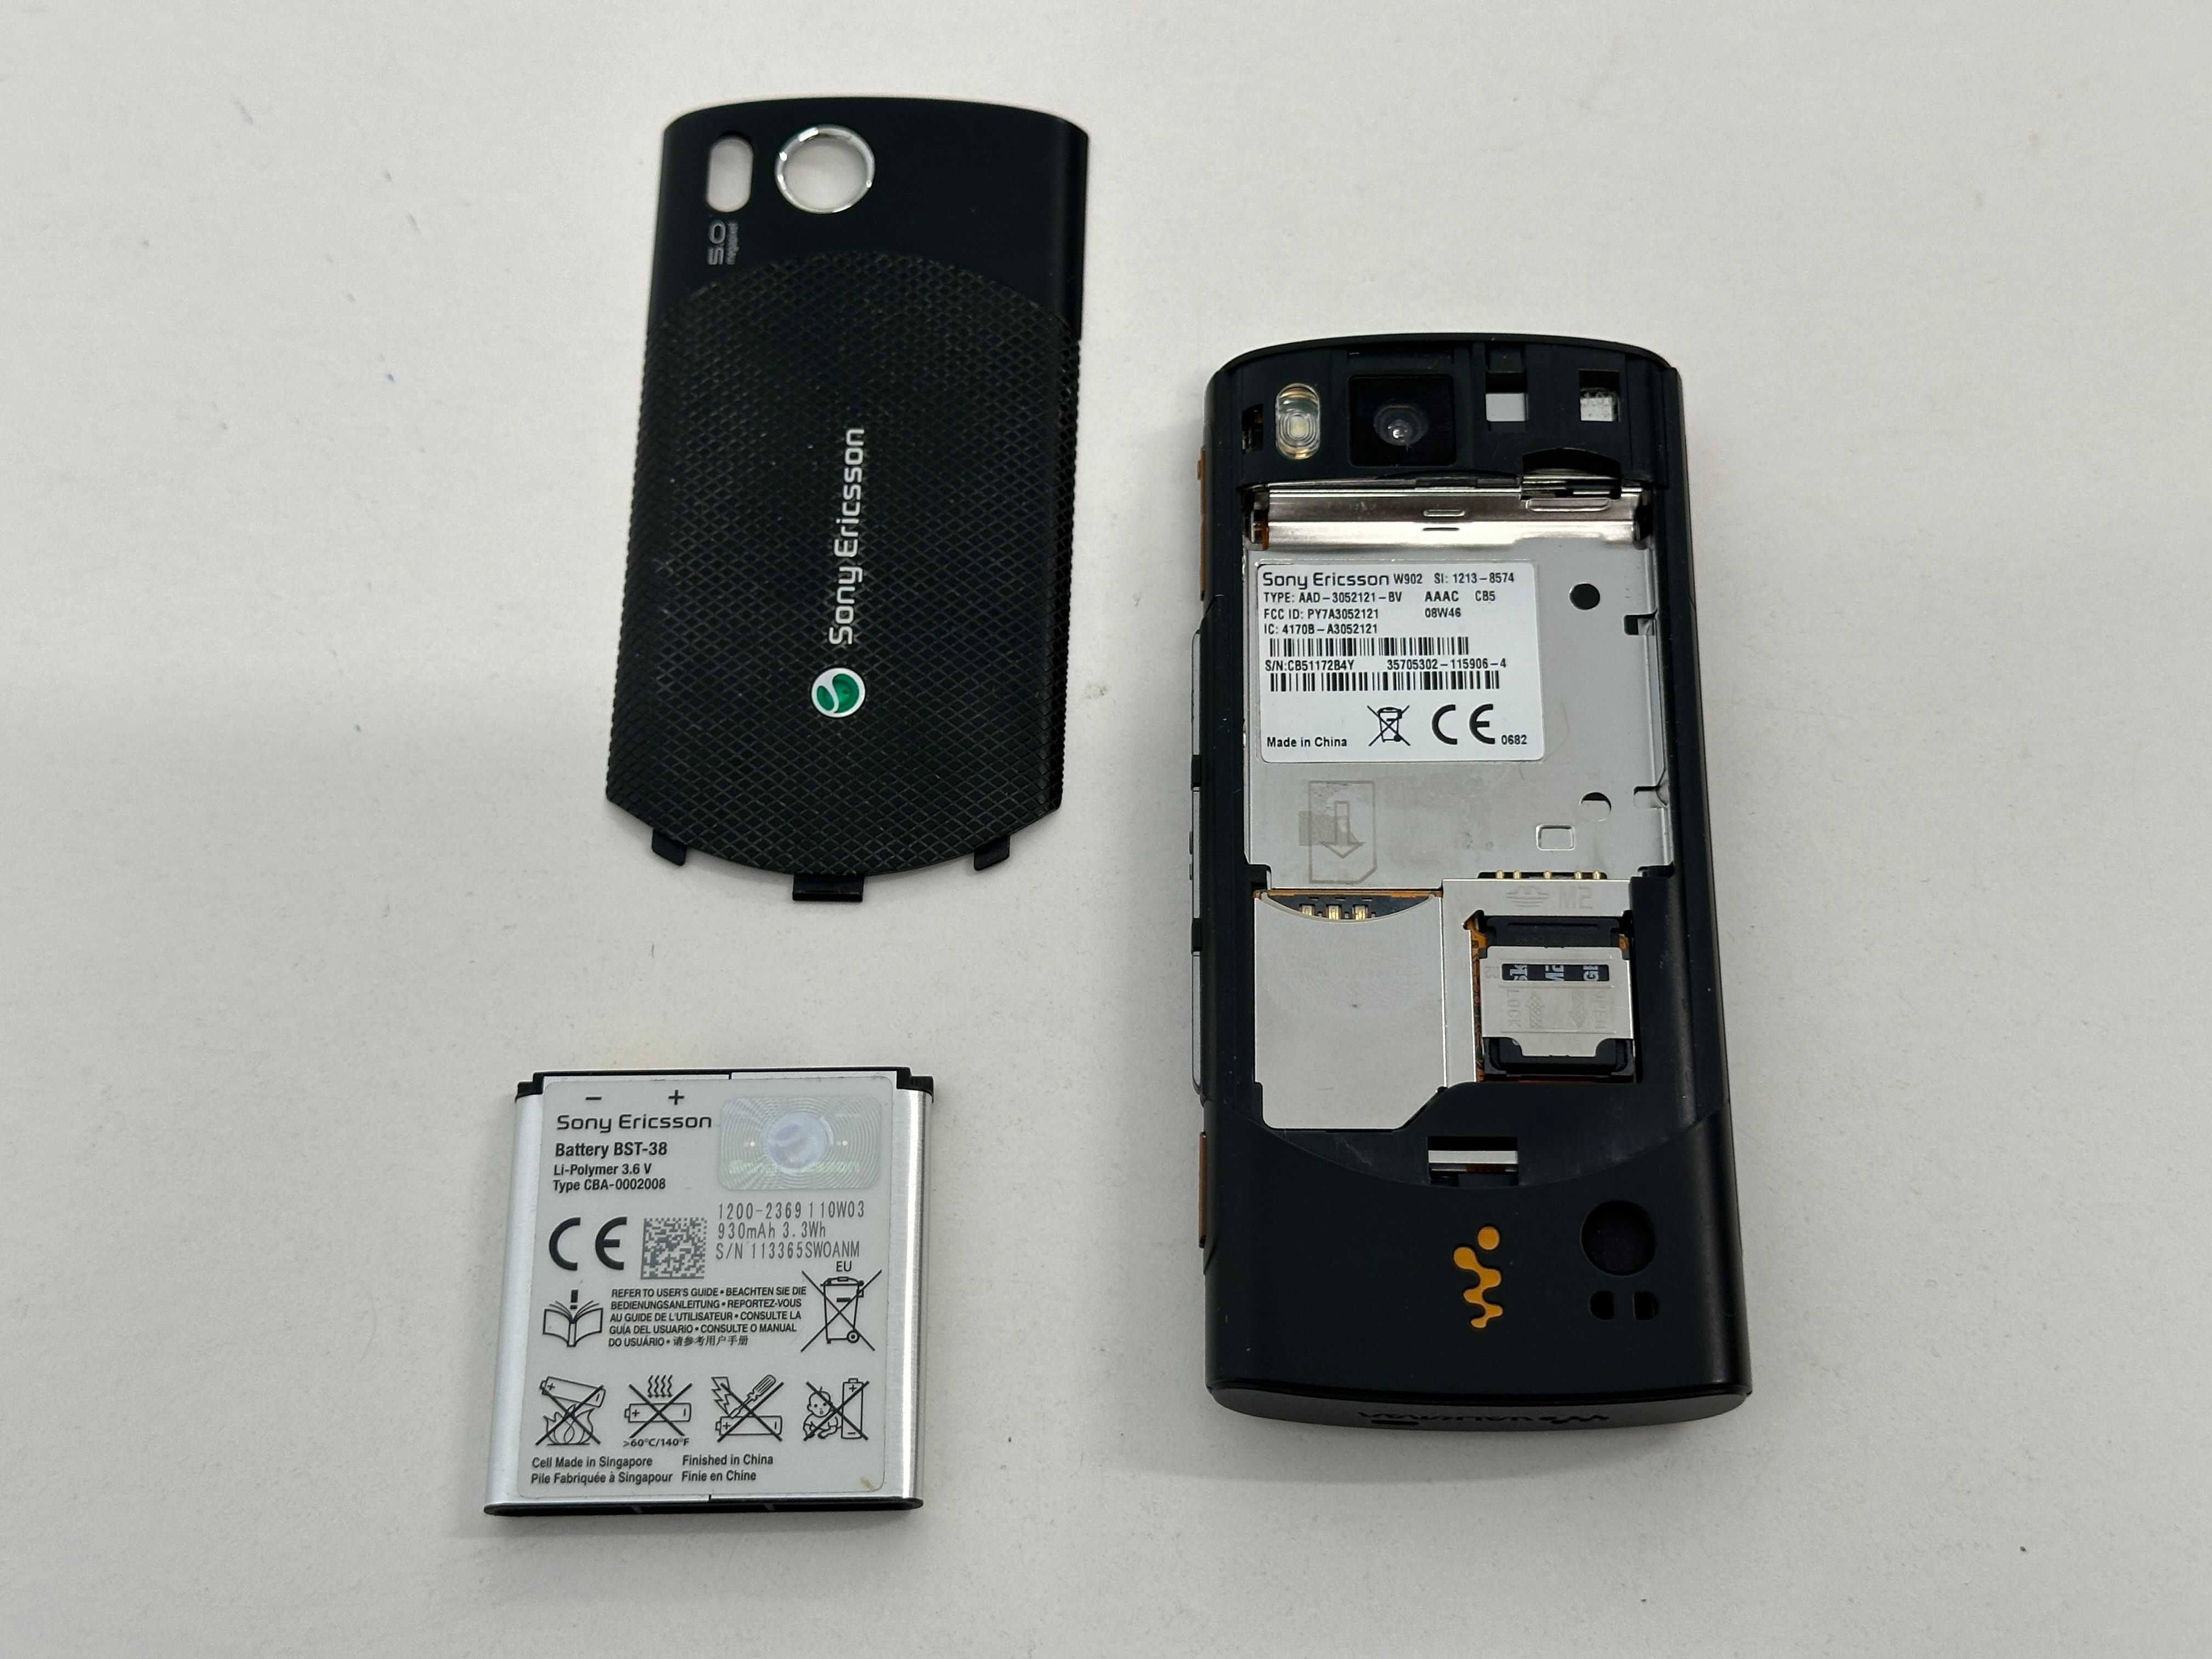 Sony Ericsson W902 sprawny bez simlocka, dla kolekcjonera, UNIKAT